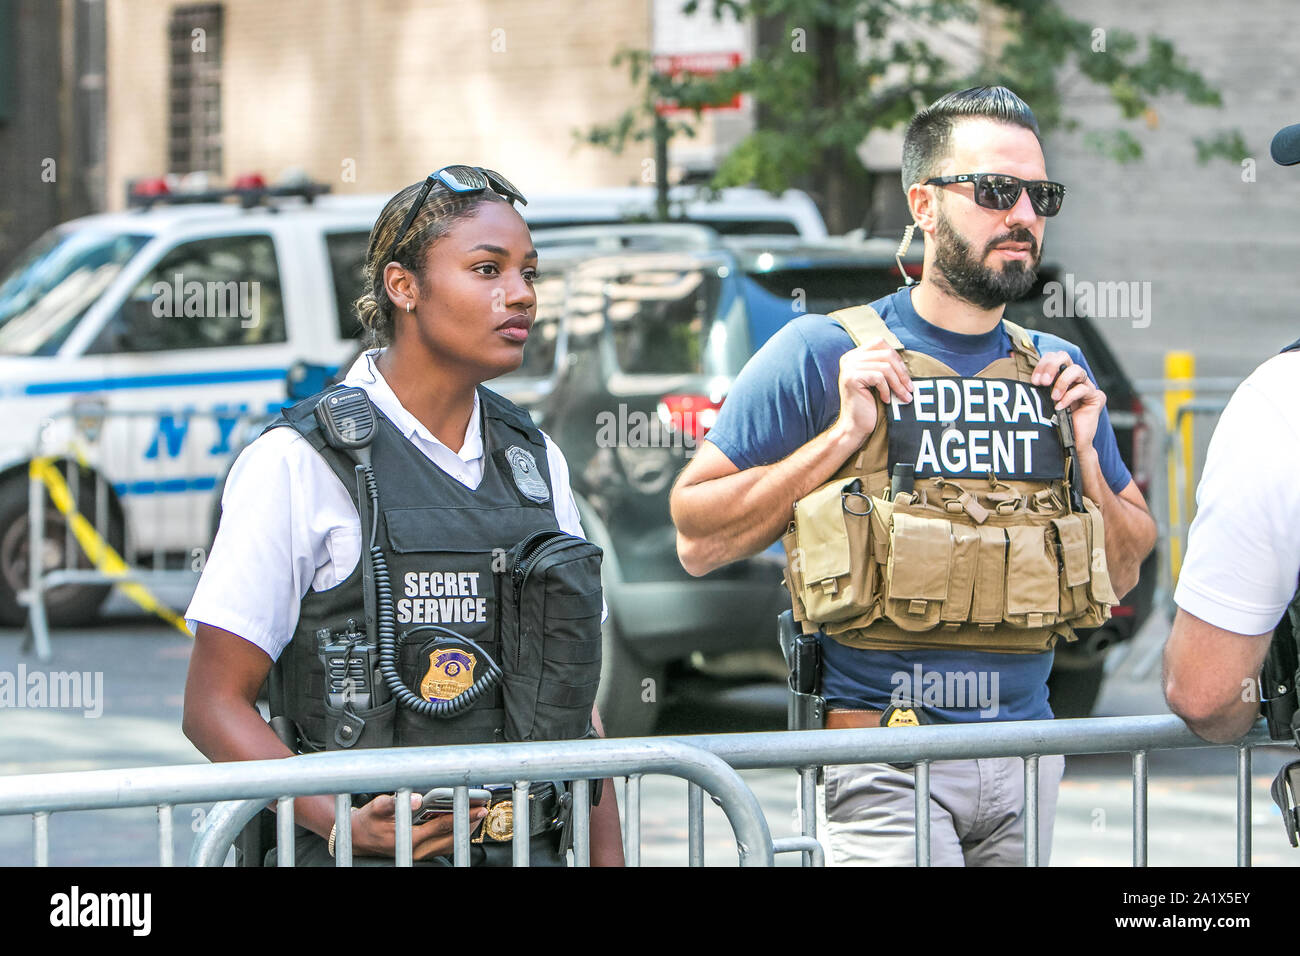 La Ciudad de Nueva York, 27/09/2019: agente federal de EE.UU. y un agente del Servicio Secreto en un puesto de control en Manhattan, durante la Asamblea General de la ONU. Foto de stock